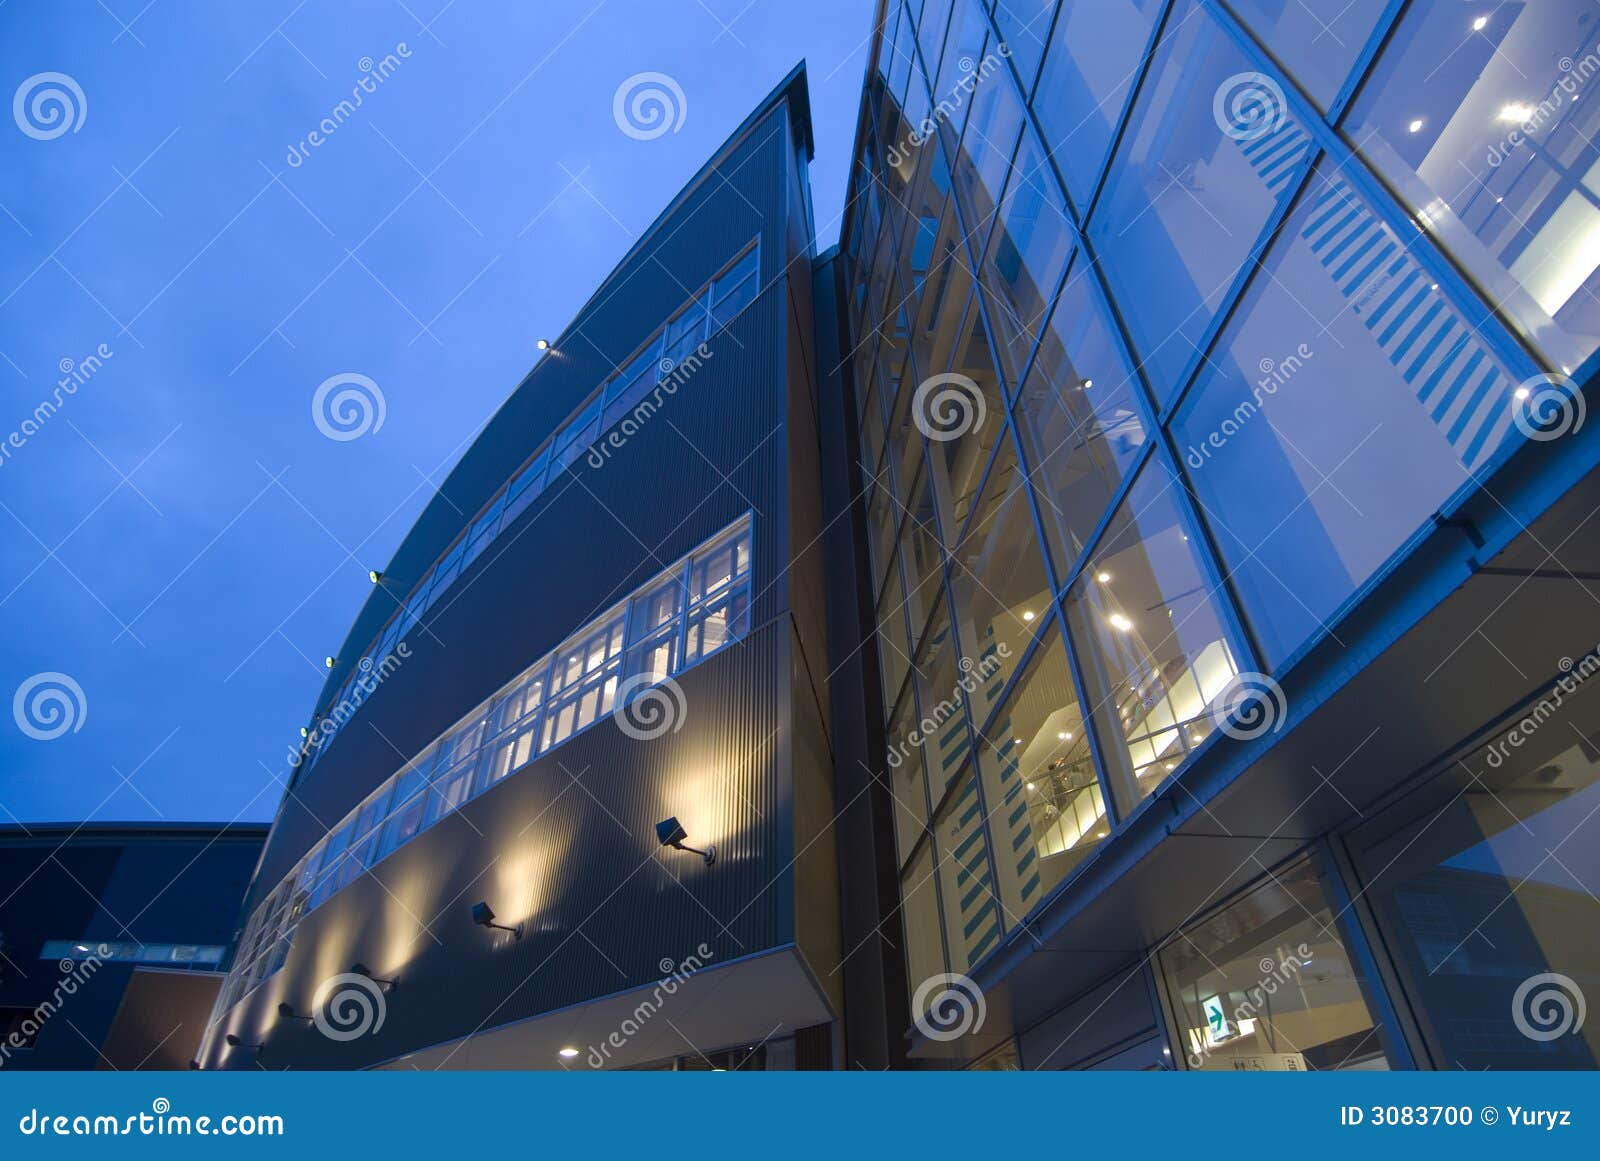 Fondo moderno del edificio. Fondo arquitectónico abstracto exterior moderno con la iluminación de la pared y de la ventana y el cielo azul